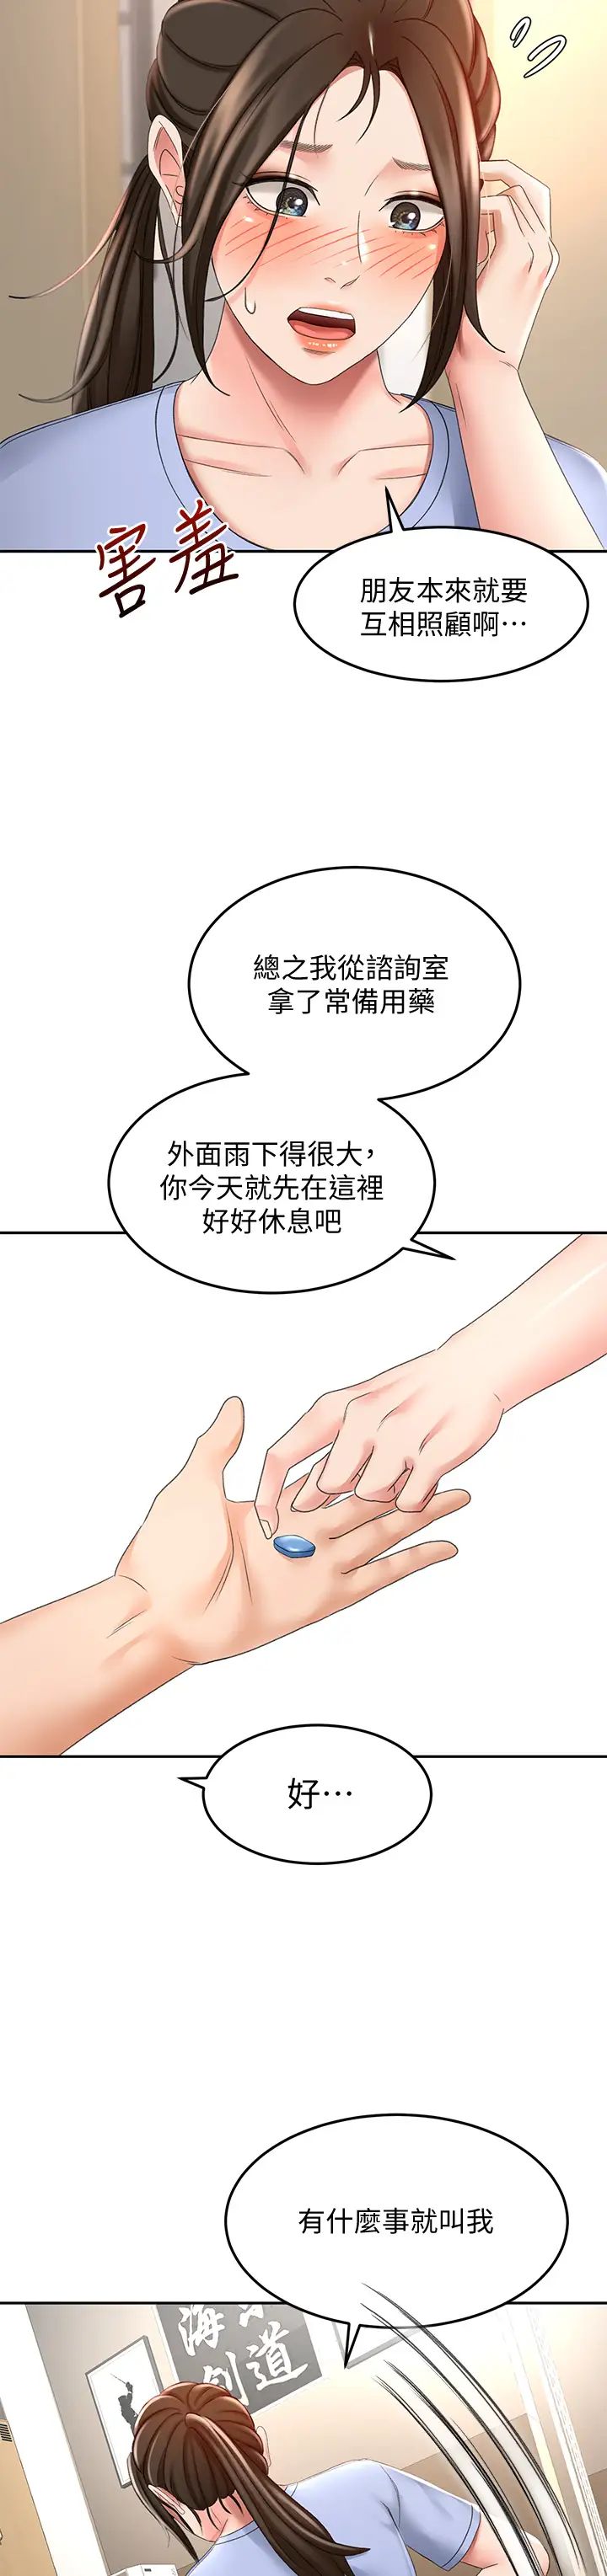 韩国污漫画 劍道學姐 第20话 全身湿透的逸云 29